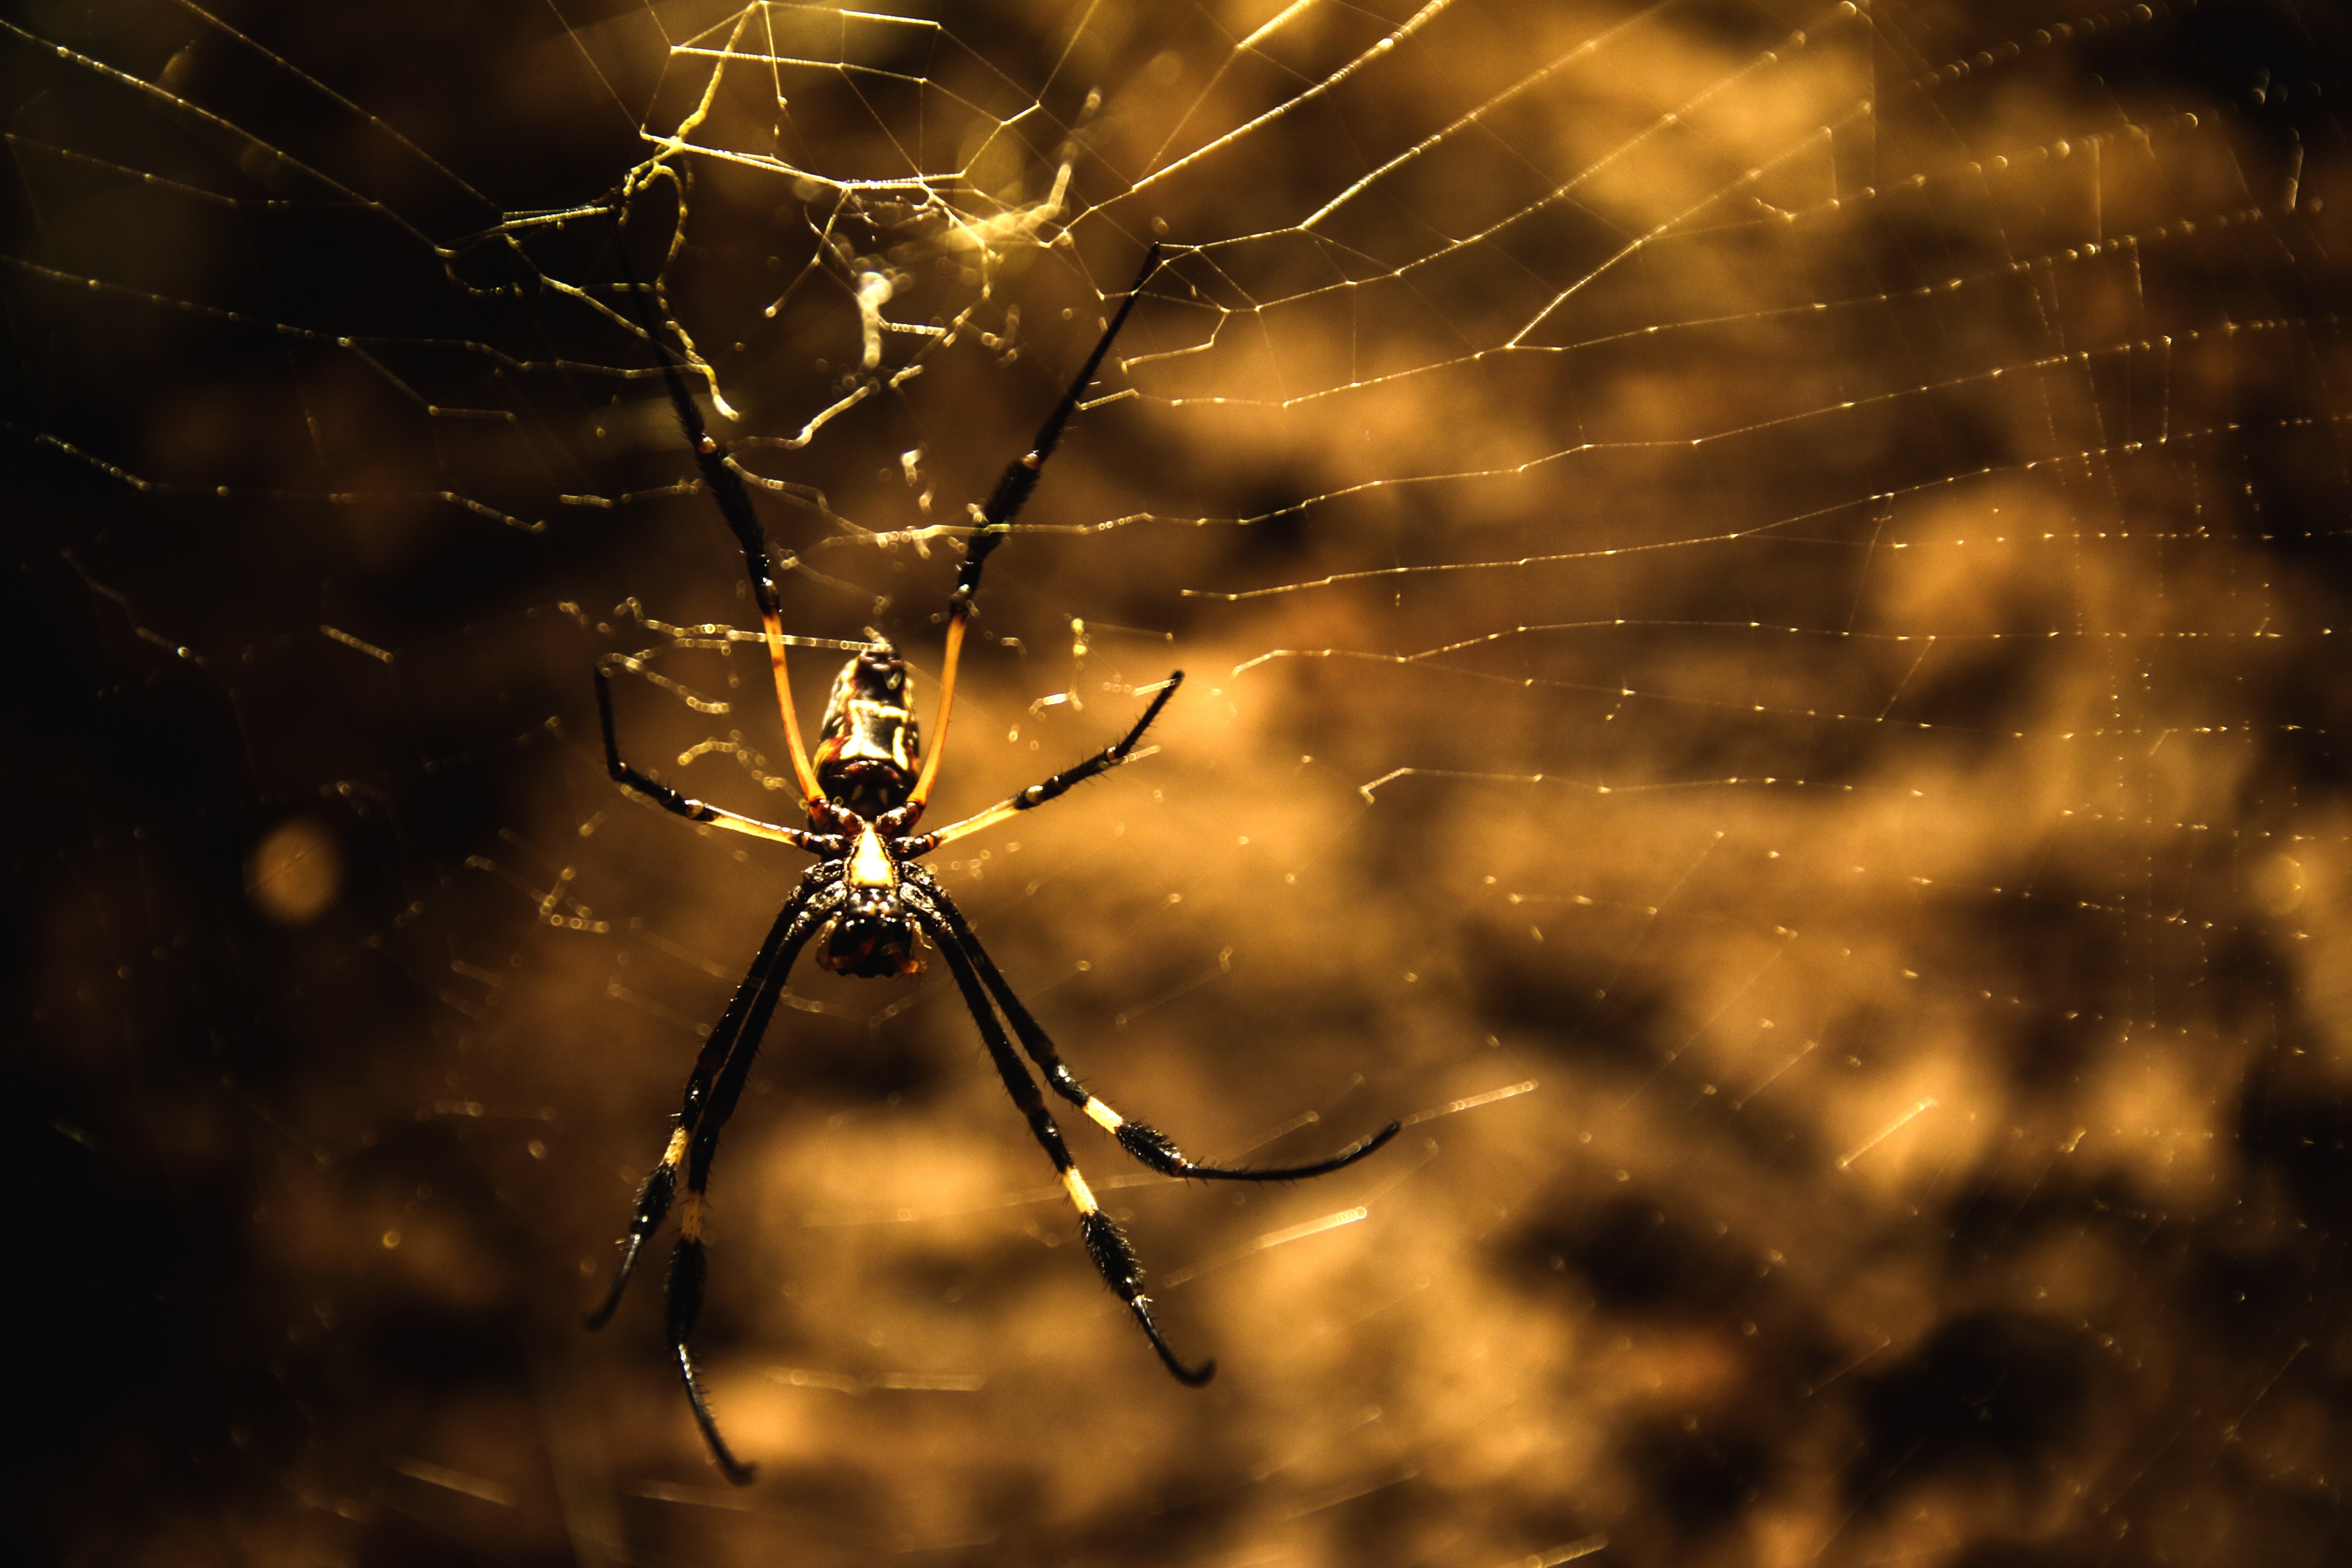 Wild spider photo